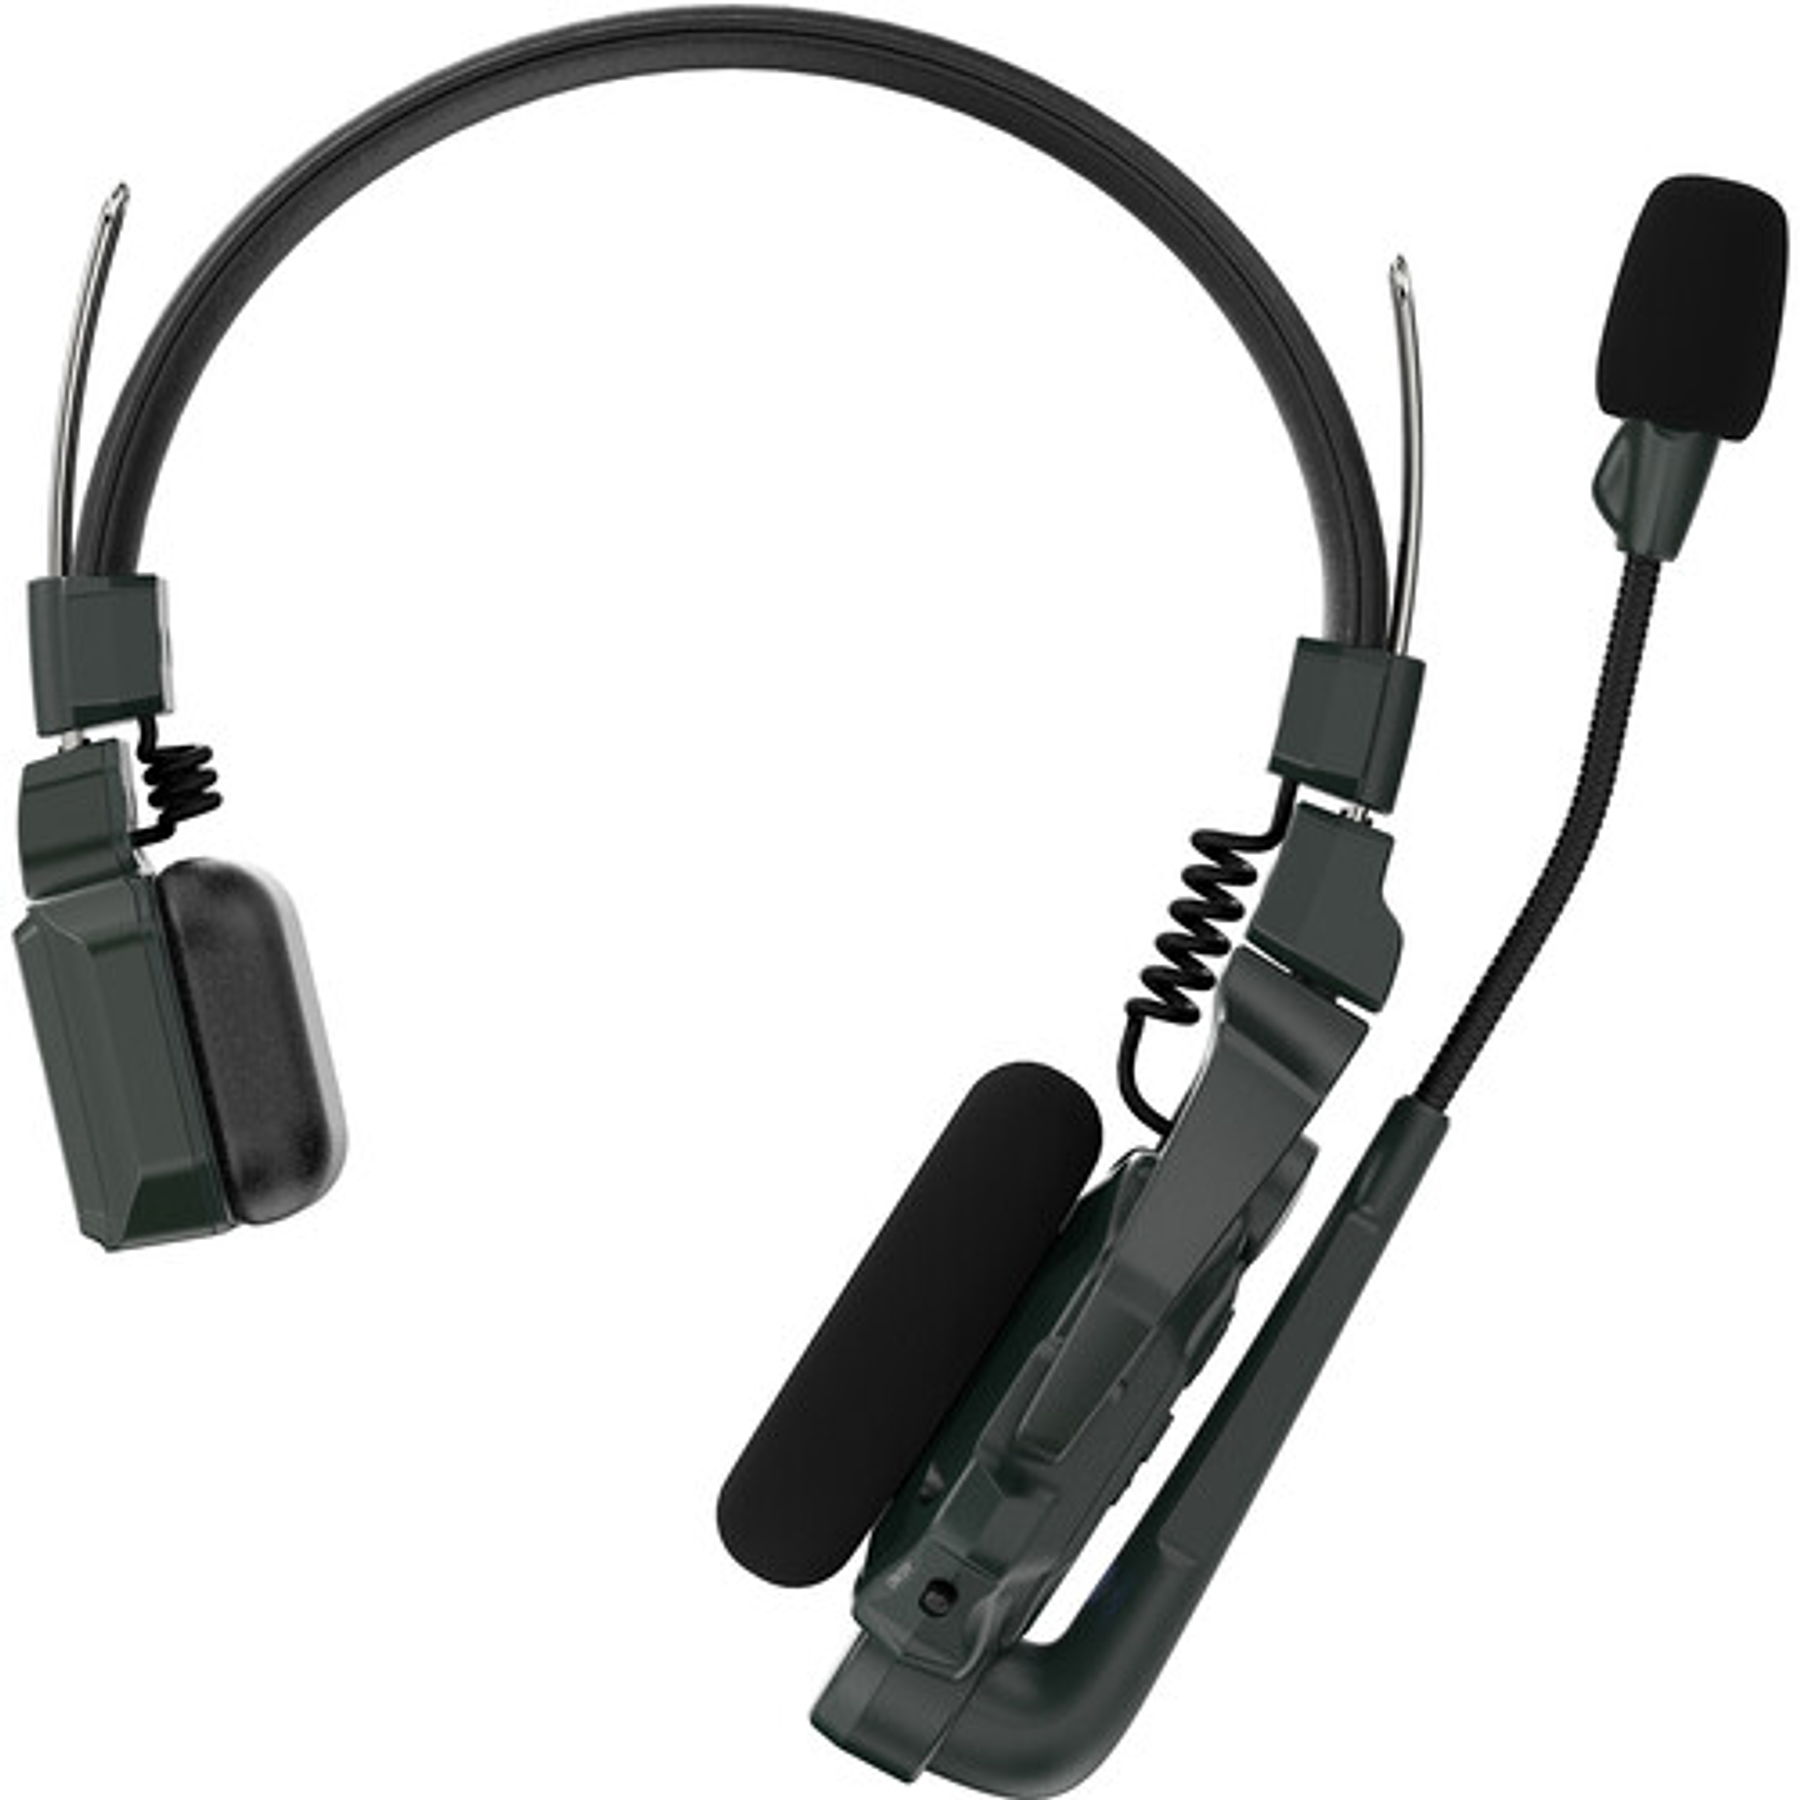 Sistema de intercomunicación DECT inalámbrico Full-Duplex Hollyland Solidcom C1-4S con 4 auriculares (1,9 GHz)